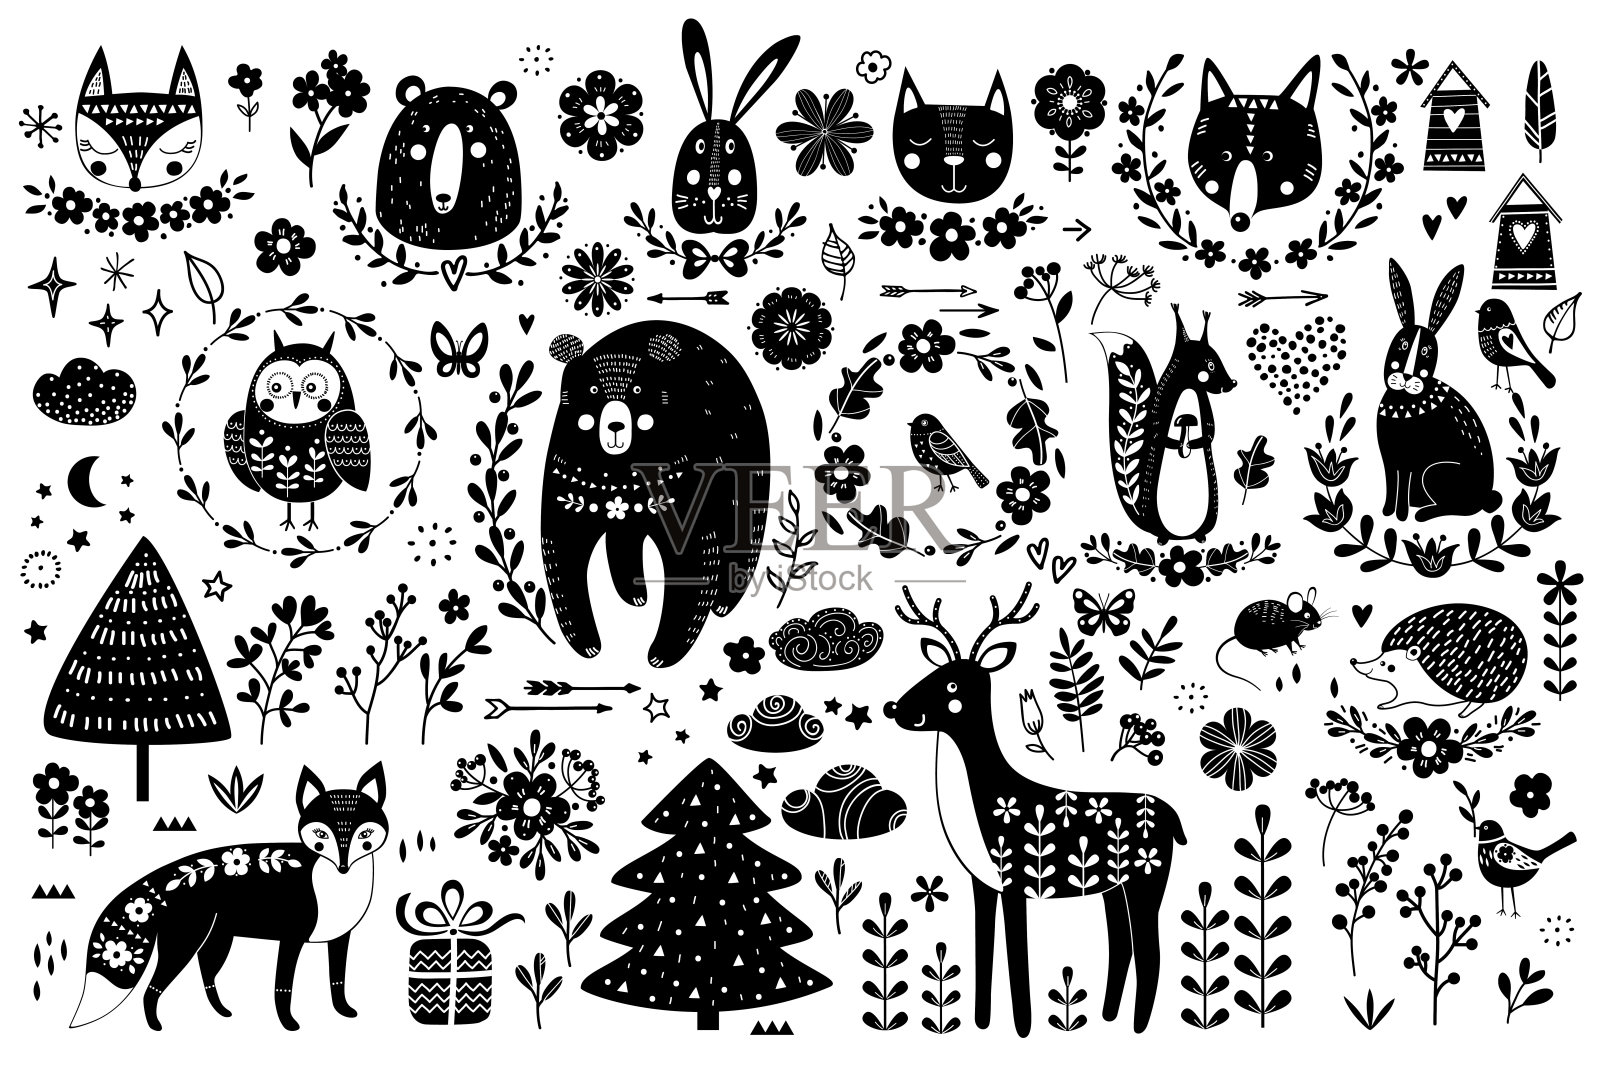 向量套可爱的动物:狐狸，熊，兔子，松鼠，狼，刺猬，猫头鹰，鹿，猫，老鼠，鸟类。收集图形元素:花，星星，云彩，箭头。插画图片素材